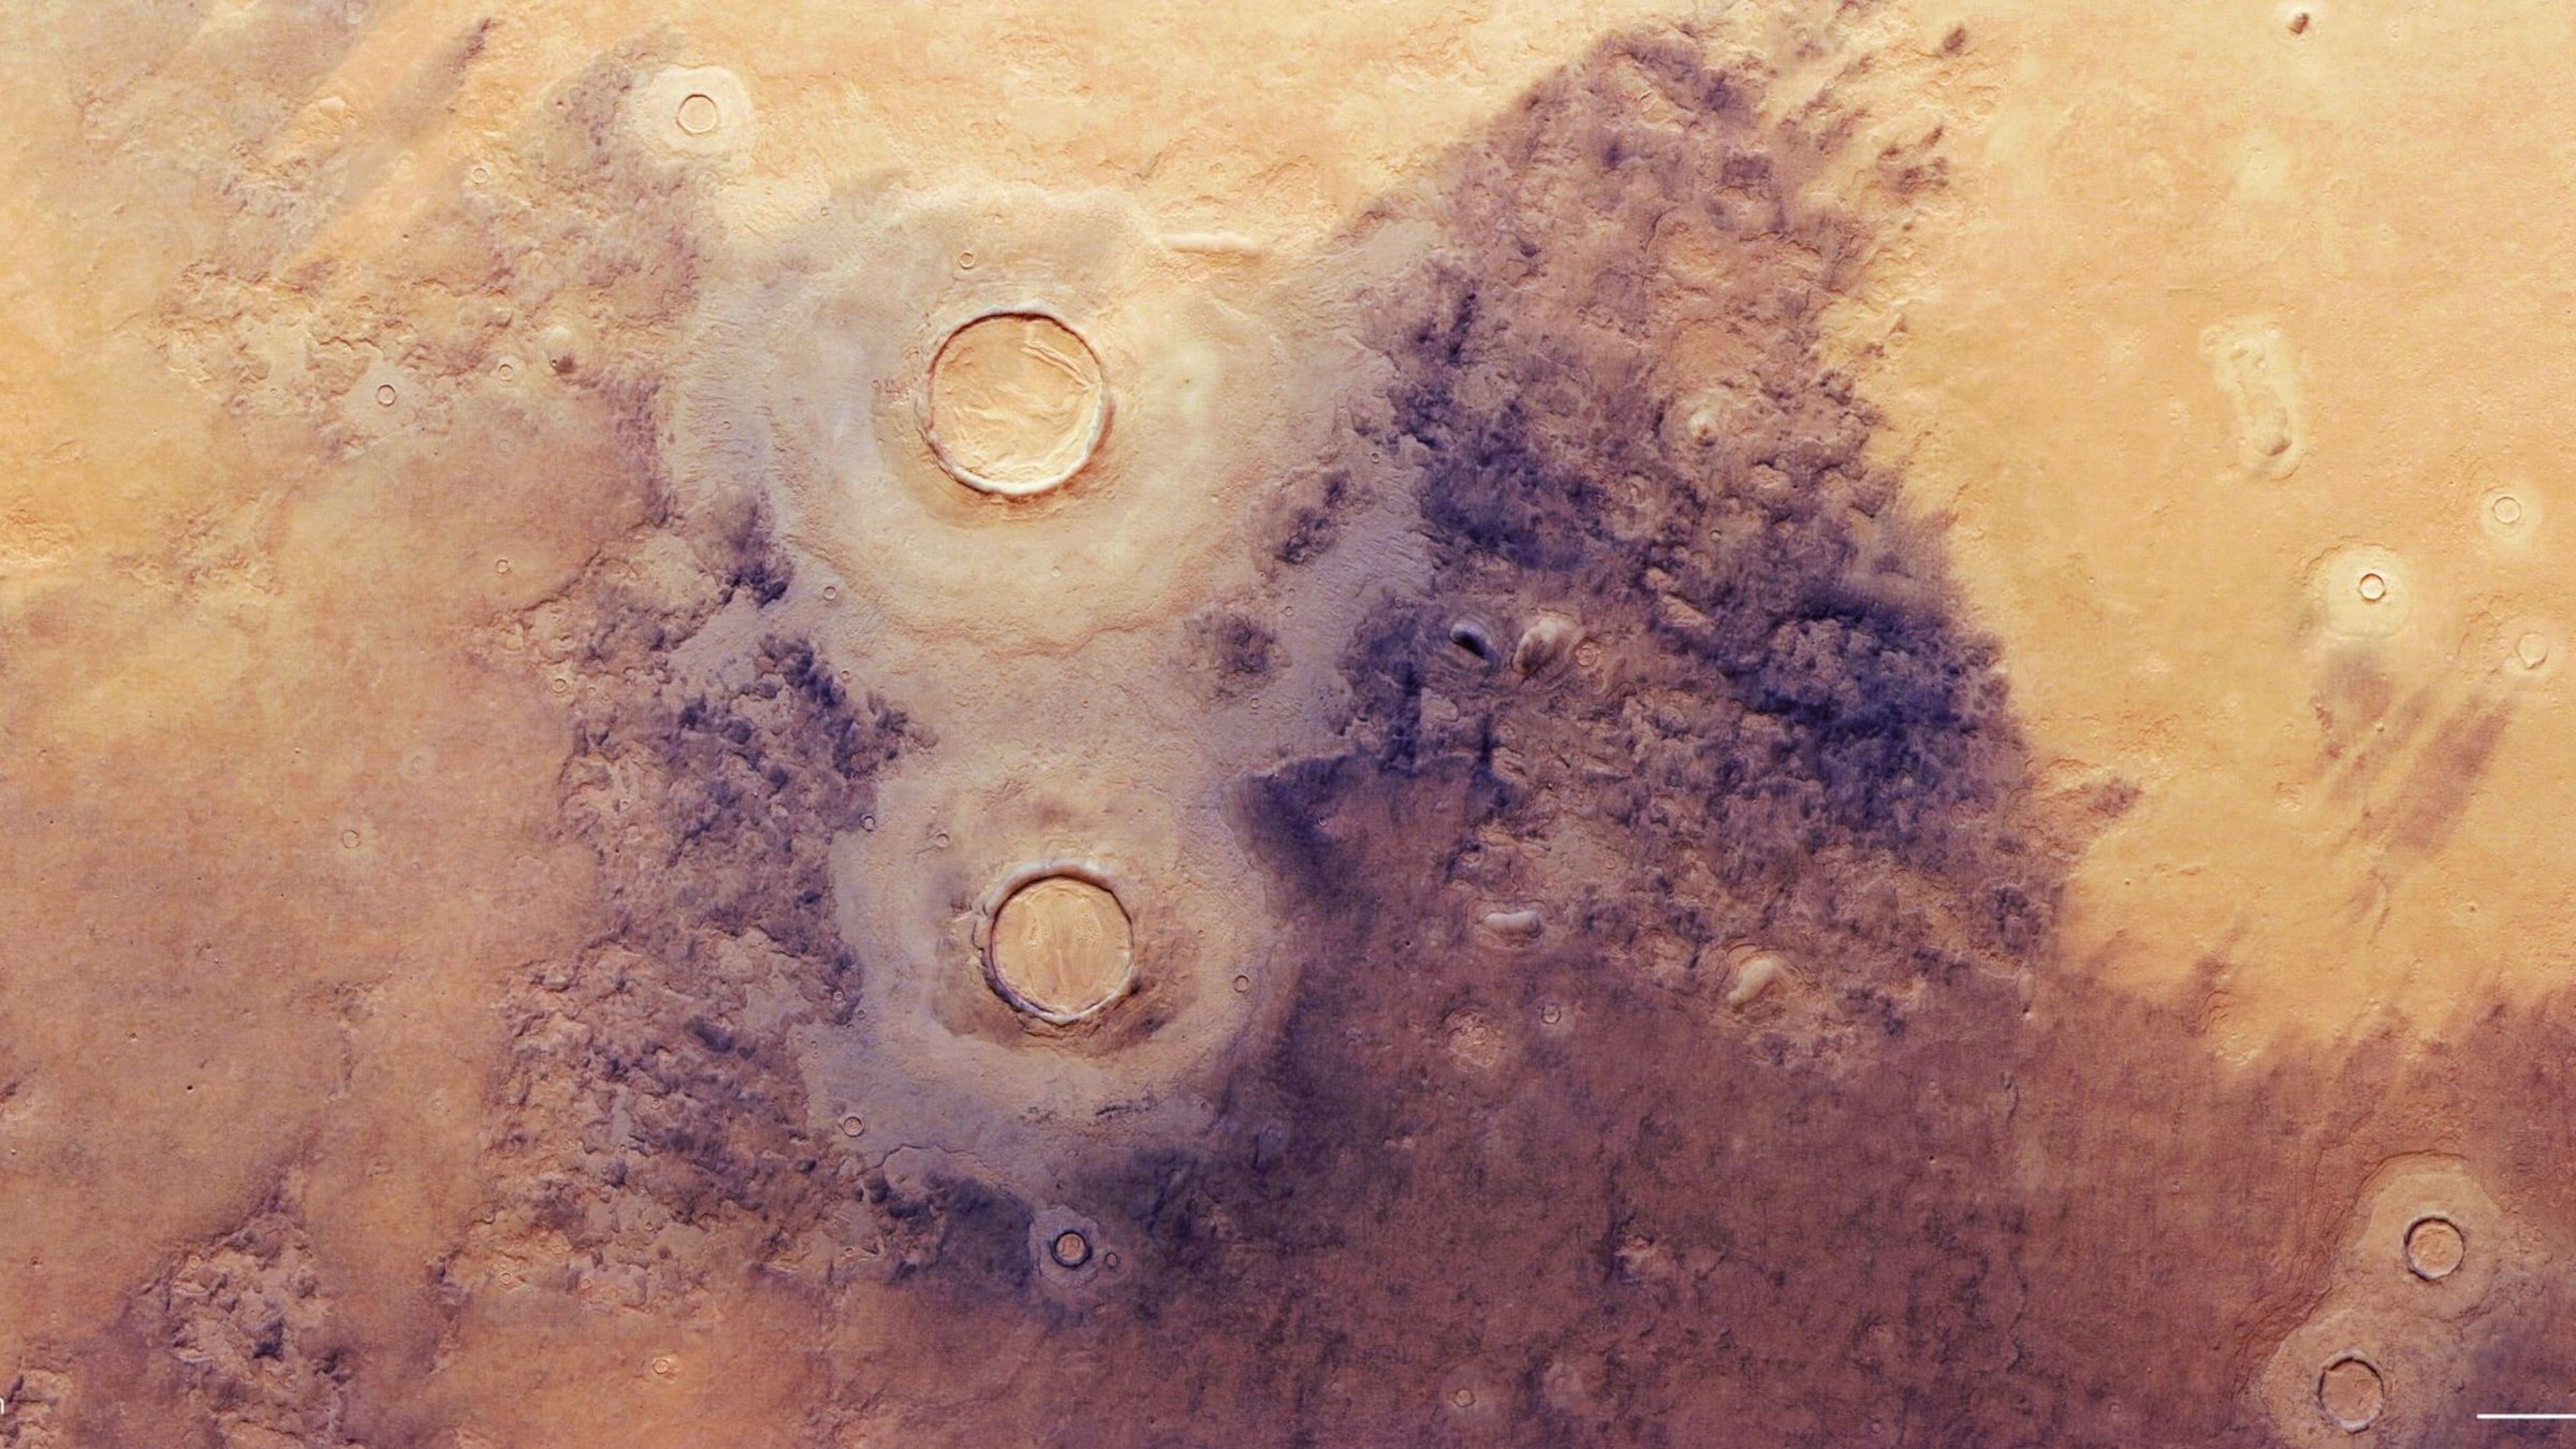 Descubren estructuras poligonales bajo la superficie de Marte